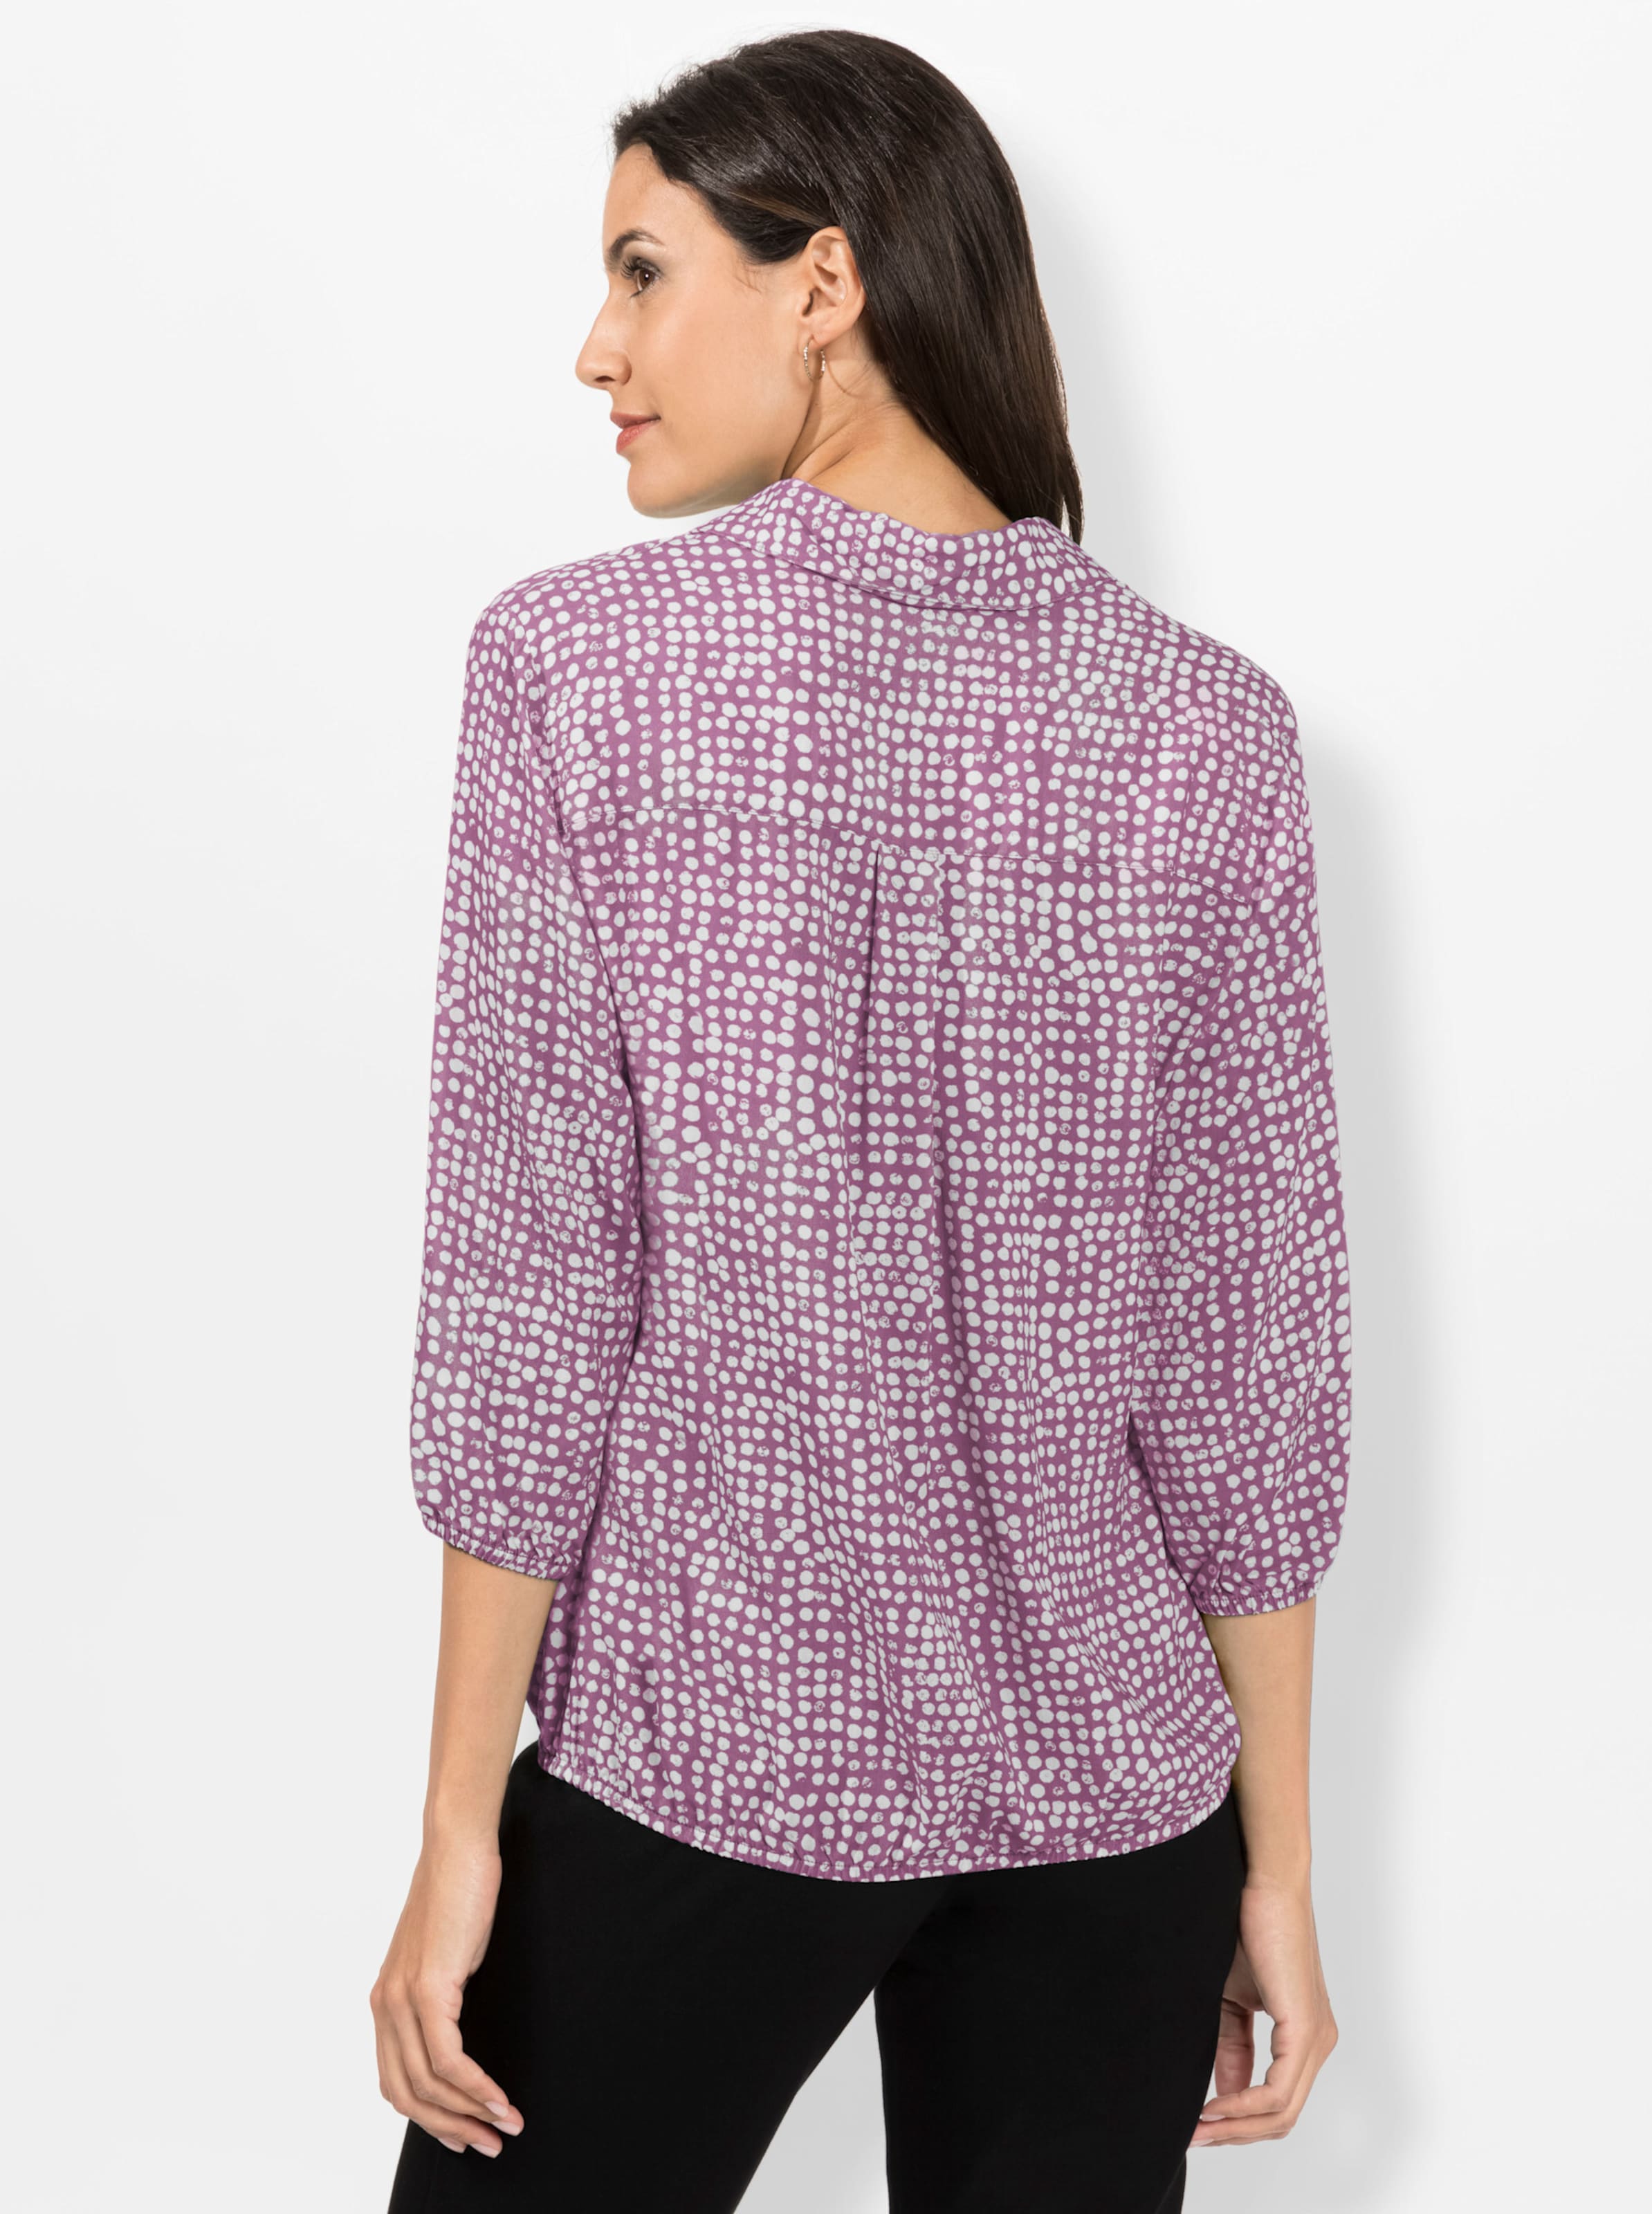 Von den günstig Kaufen-Bluse in violett-weiß-bedruckt von heine. Bluse in violett-weiß-bedruckt von heine <![CDATA[Minimal-Muster sind ein Muss! Mit dieser allover bedruckten Bluse sind Sie immer schick angezogen. Mit offenem Hemdkragen und schimmernden Knöpfen an de